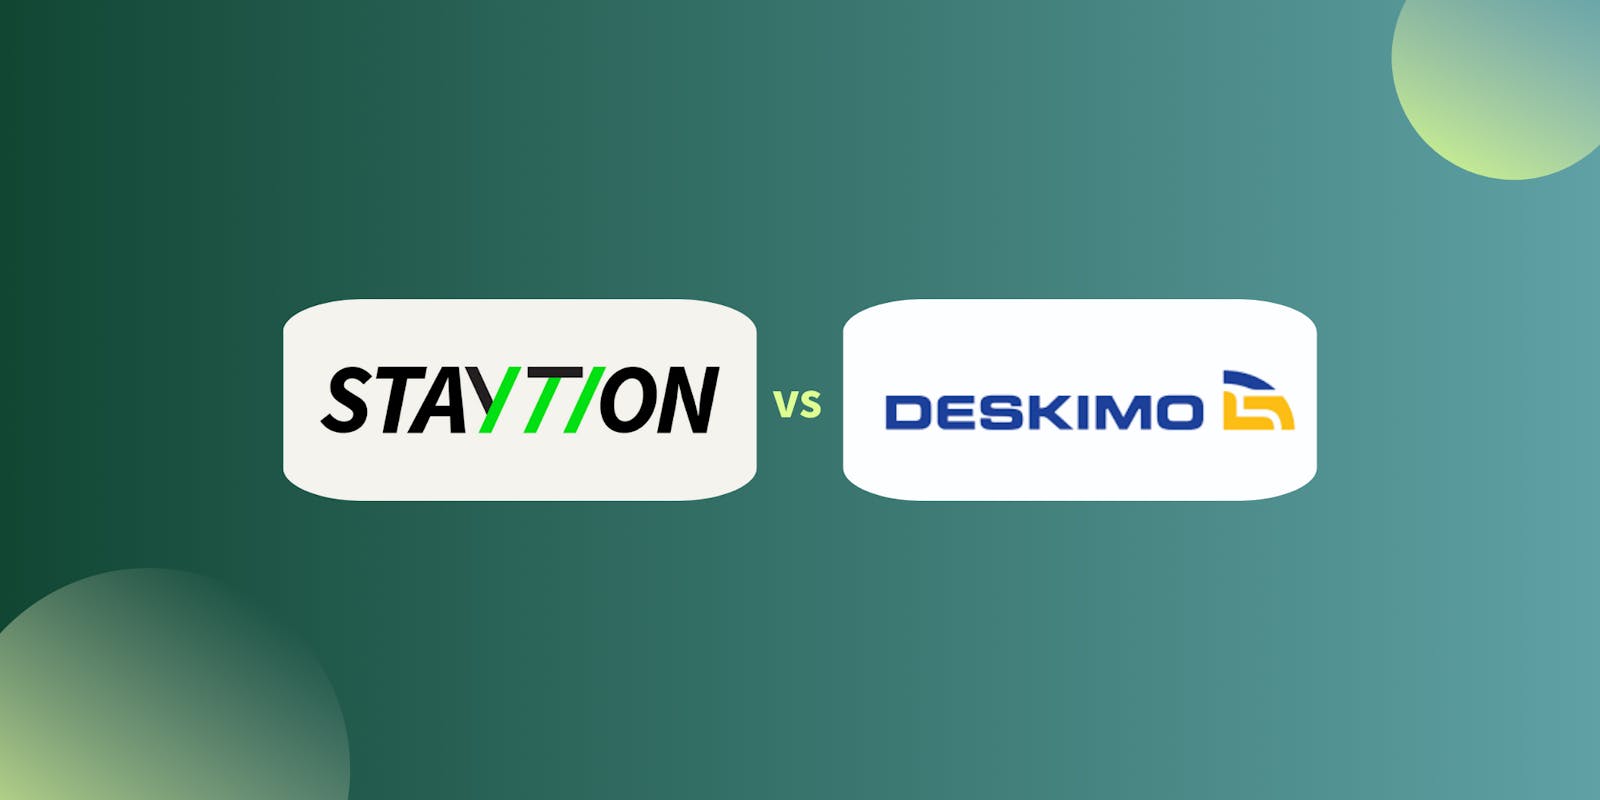 Staytion vs Deskimo - Which Workspace Platform Reigns Supreme